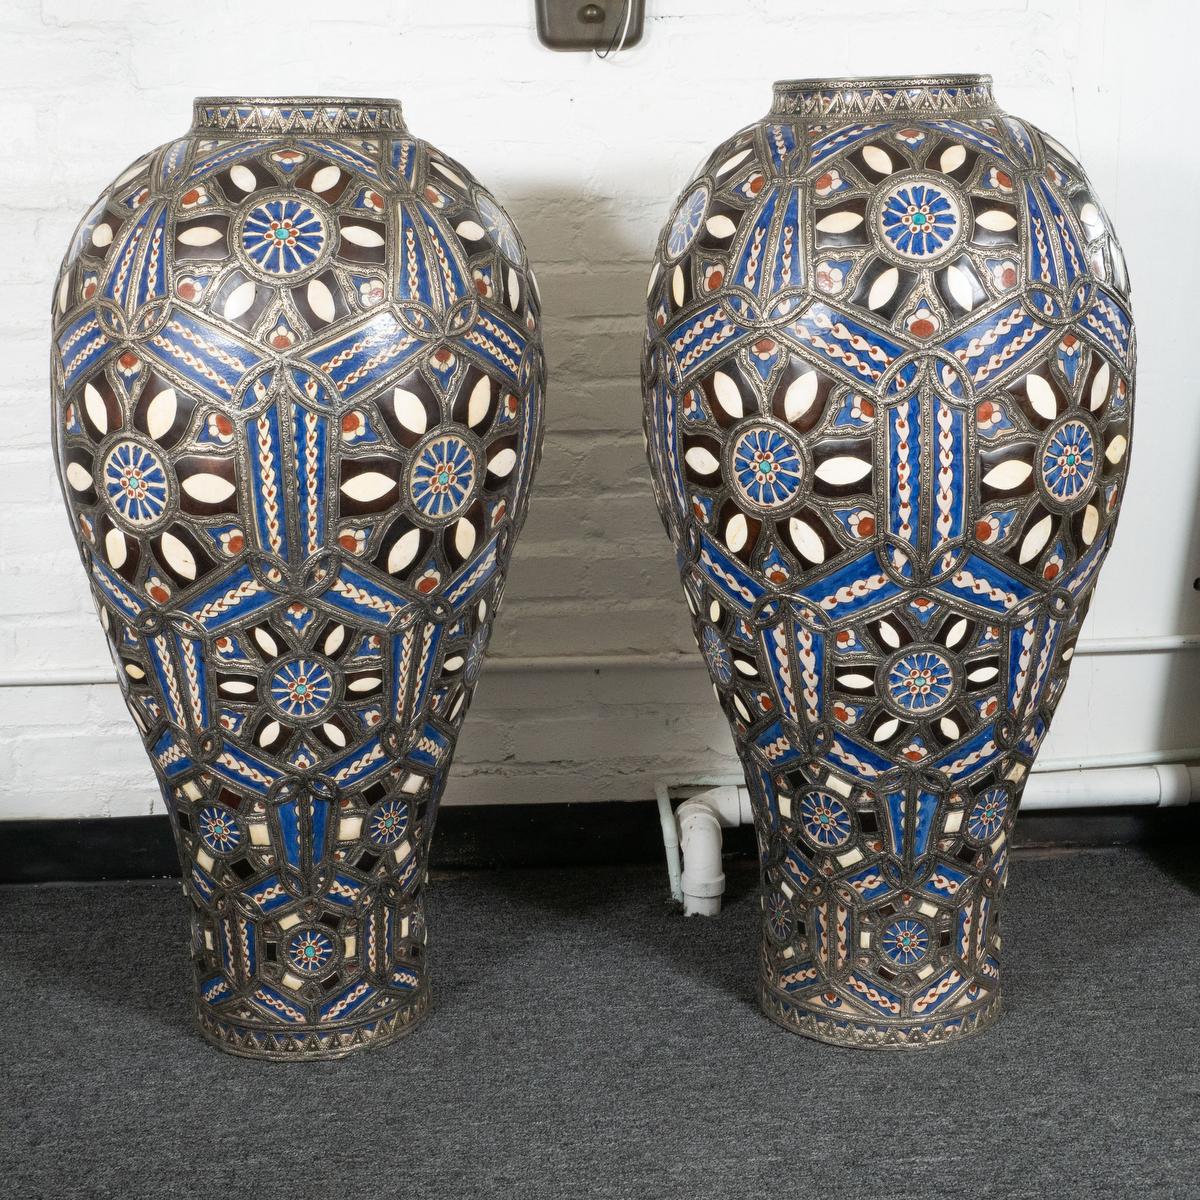 Paire de vases marocains colorés, bleus, blancs et rouges, en céramique de grande taille. Les vases présentent de magnifiques éléments incrustés et peints pour créer un effet de mosaïque époustouflant, ainsi qu'un cadre en métal pressé de manière